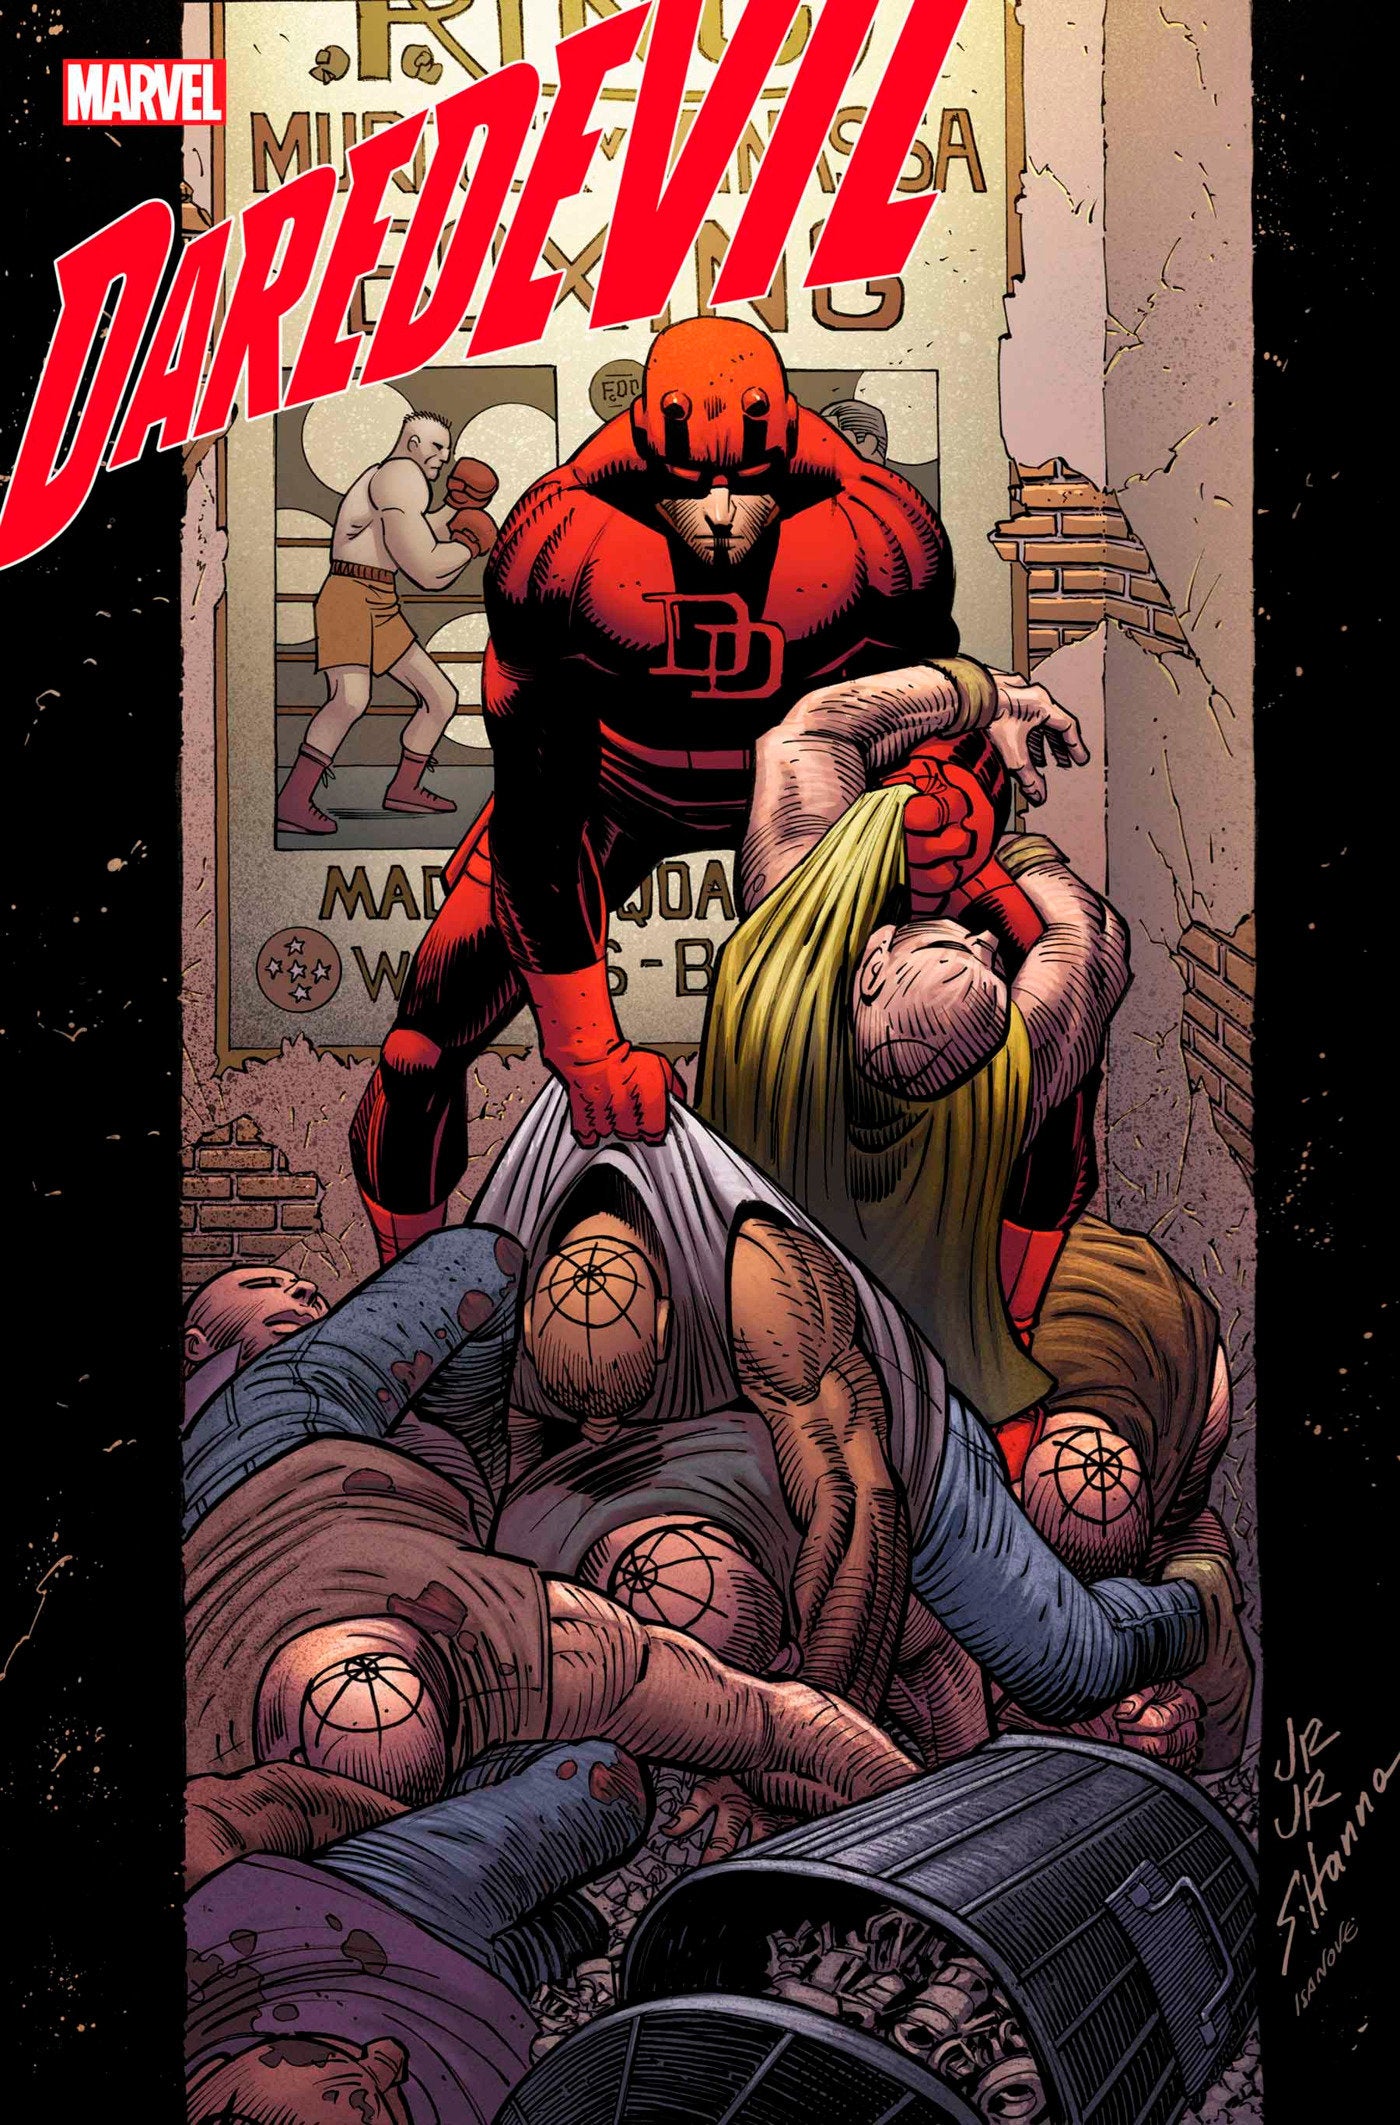 Daredevil #8 | Game Master's Emporium (The New GME)